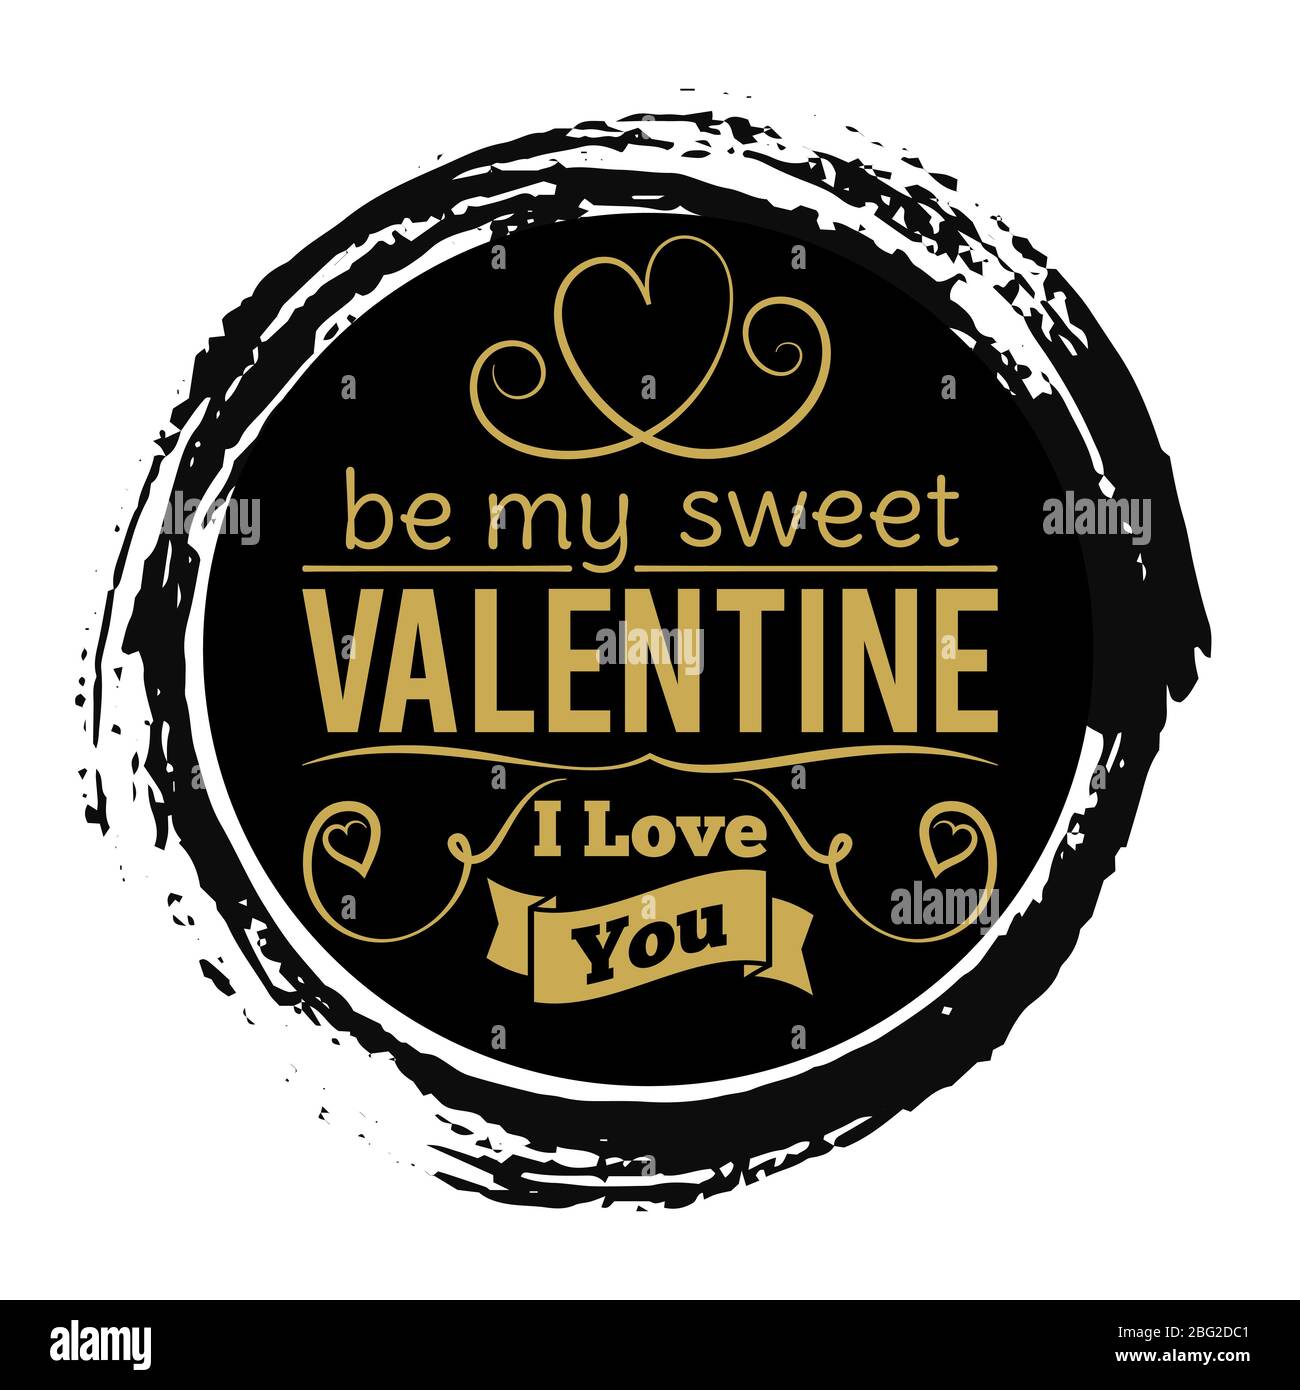 Süßes Valentinstag-Goldbanner auf schwarzer Grunge-Kulisse - Vintage Love Stamp Design. Stempel valentinstag Urlaub, Liebe und romantisch. Vektorillus Stock Vektor